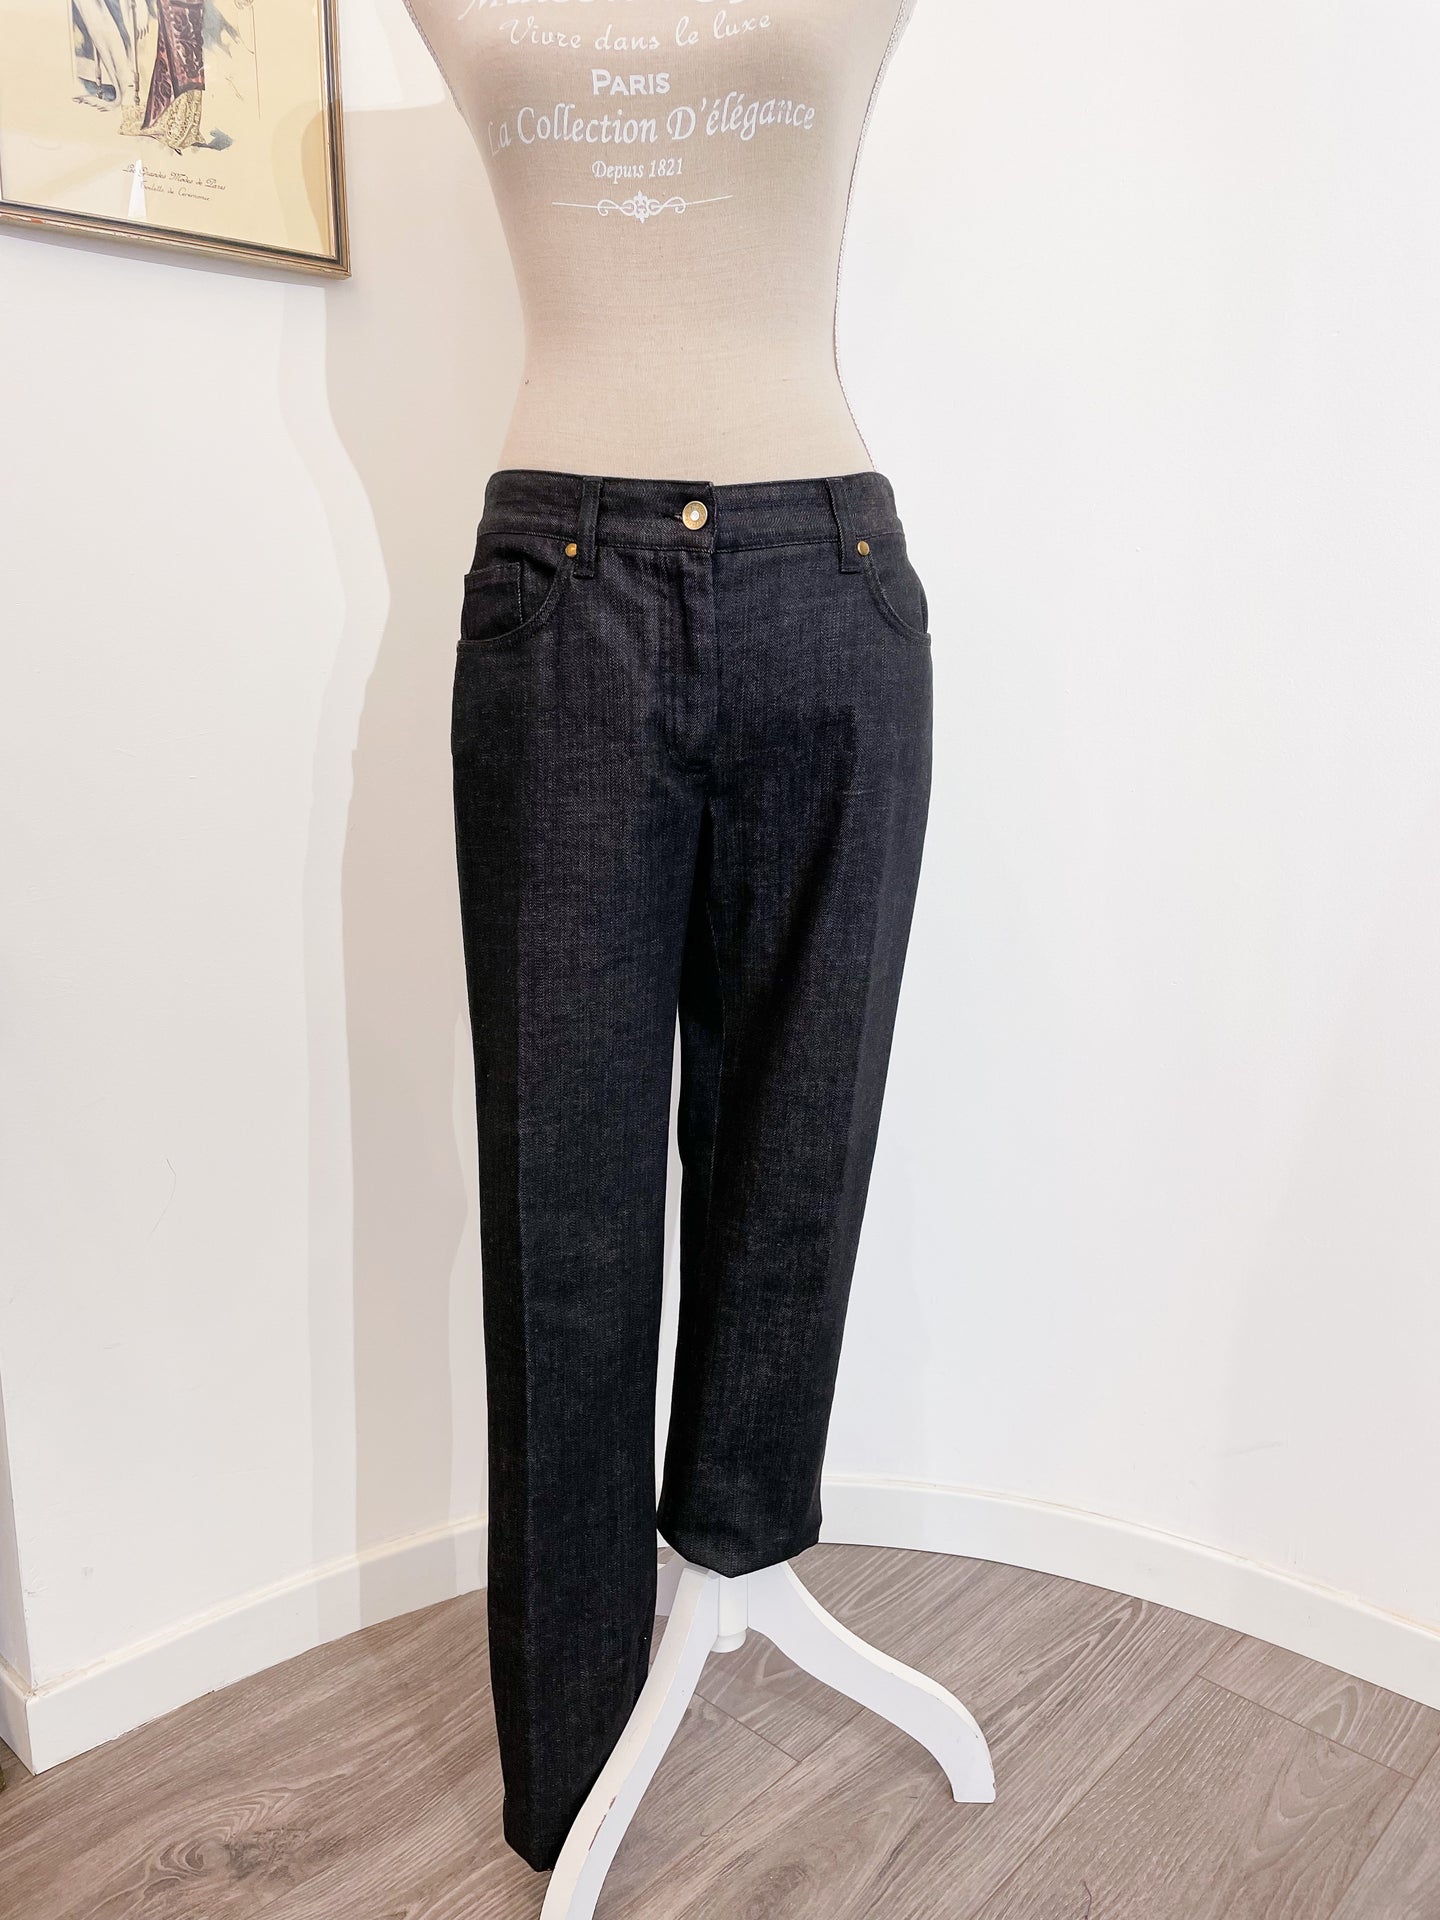 Dolce e Gabbana - Jeans - Taglia 44